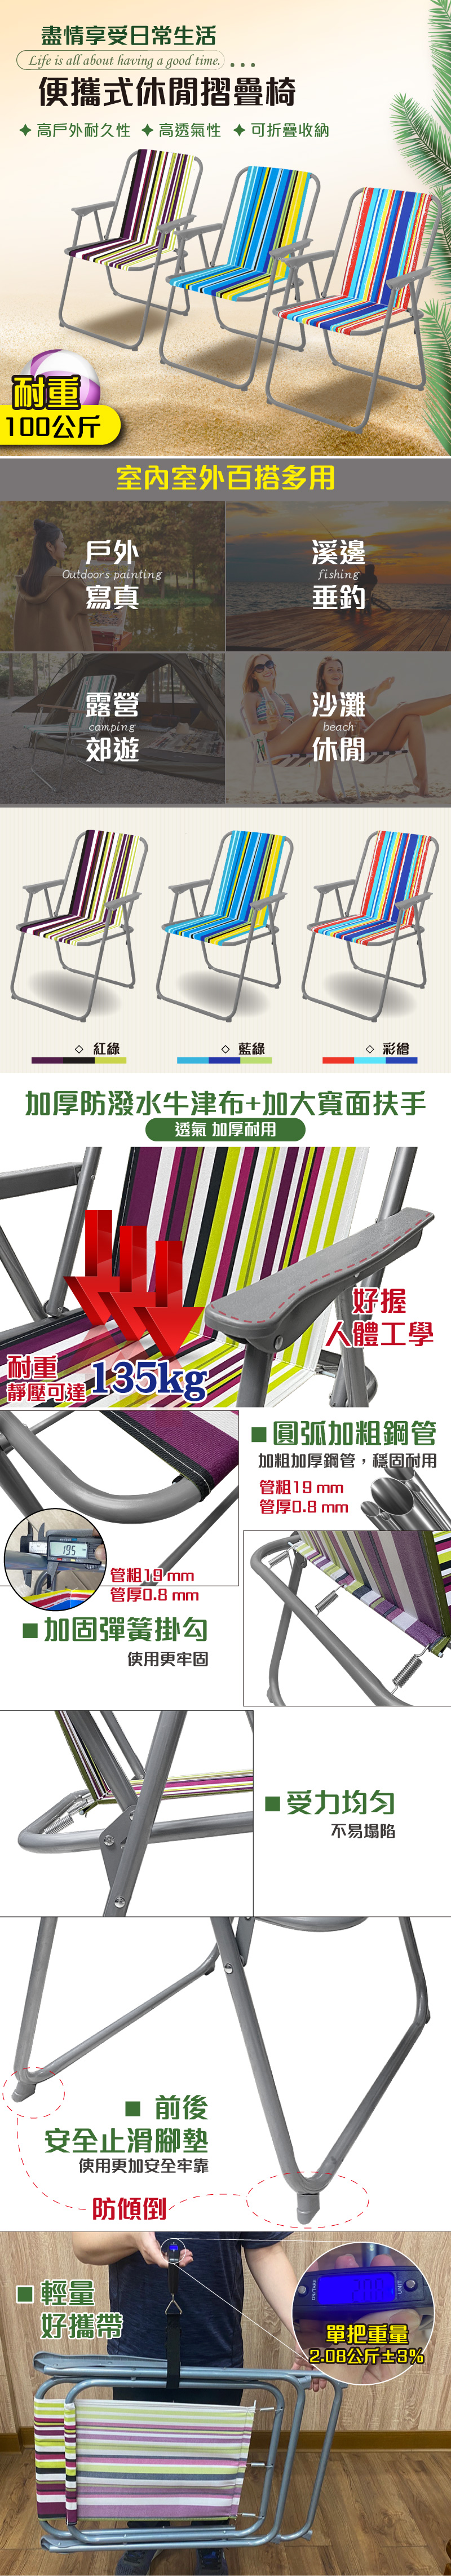 鋁管輕便折疊椅